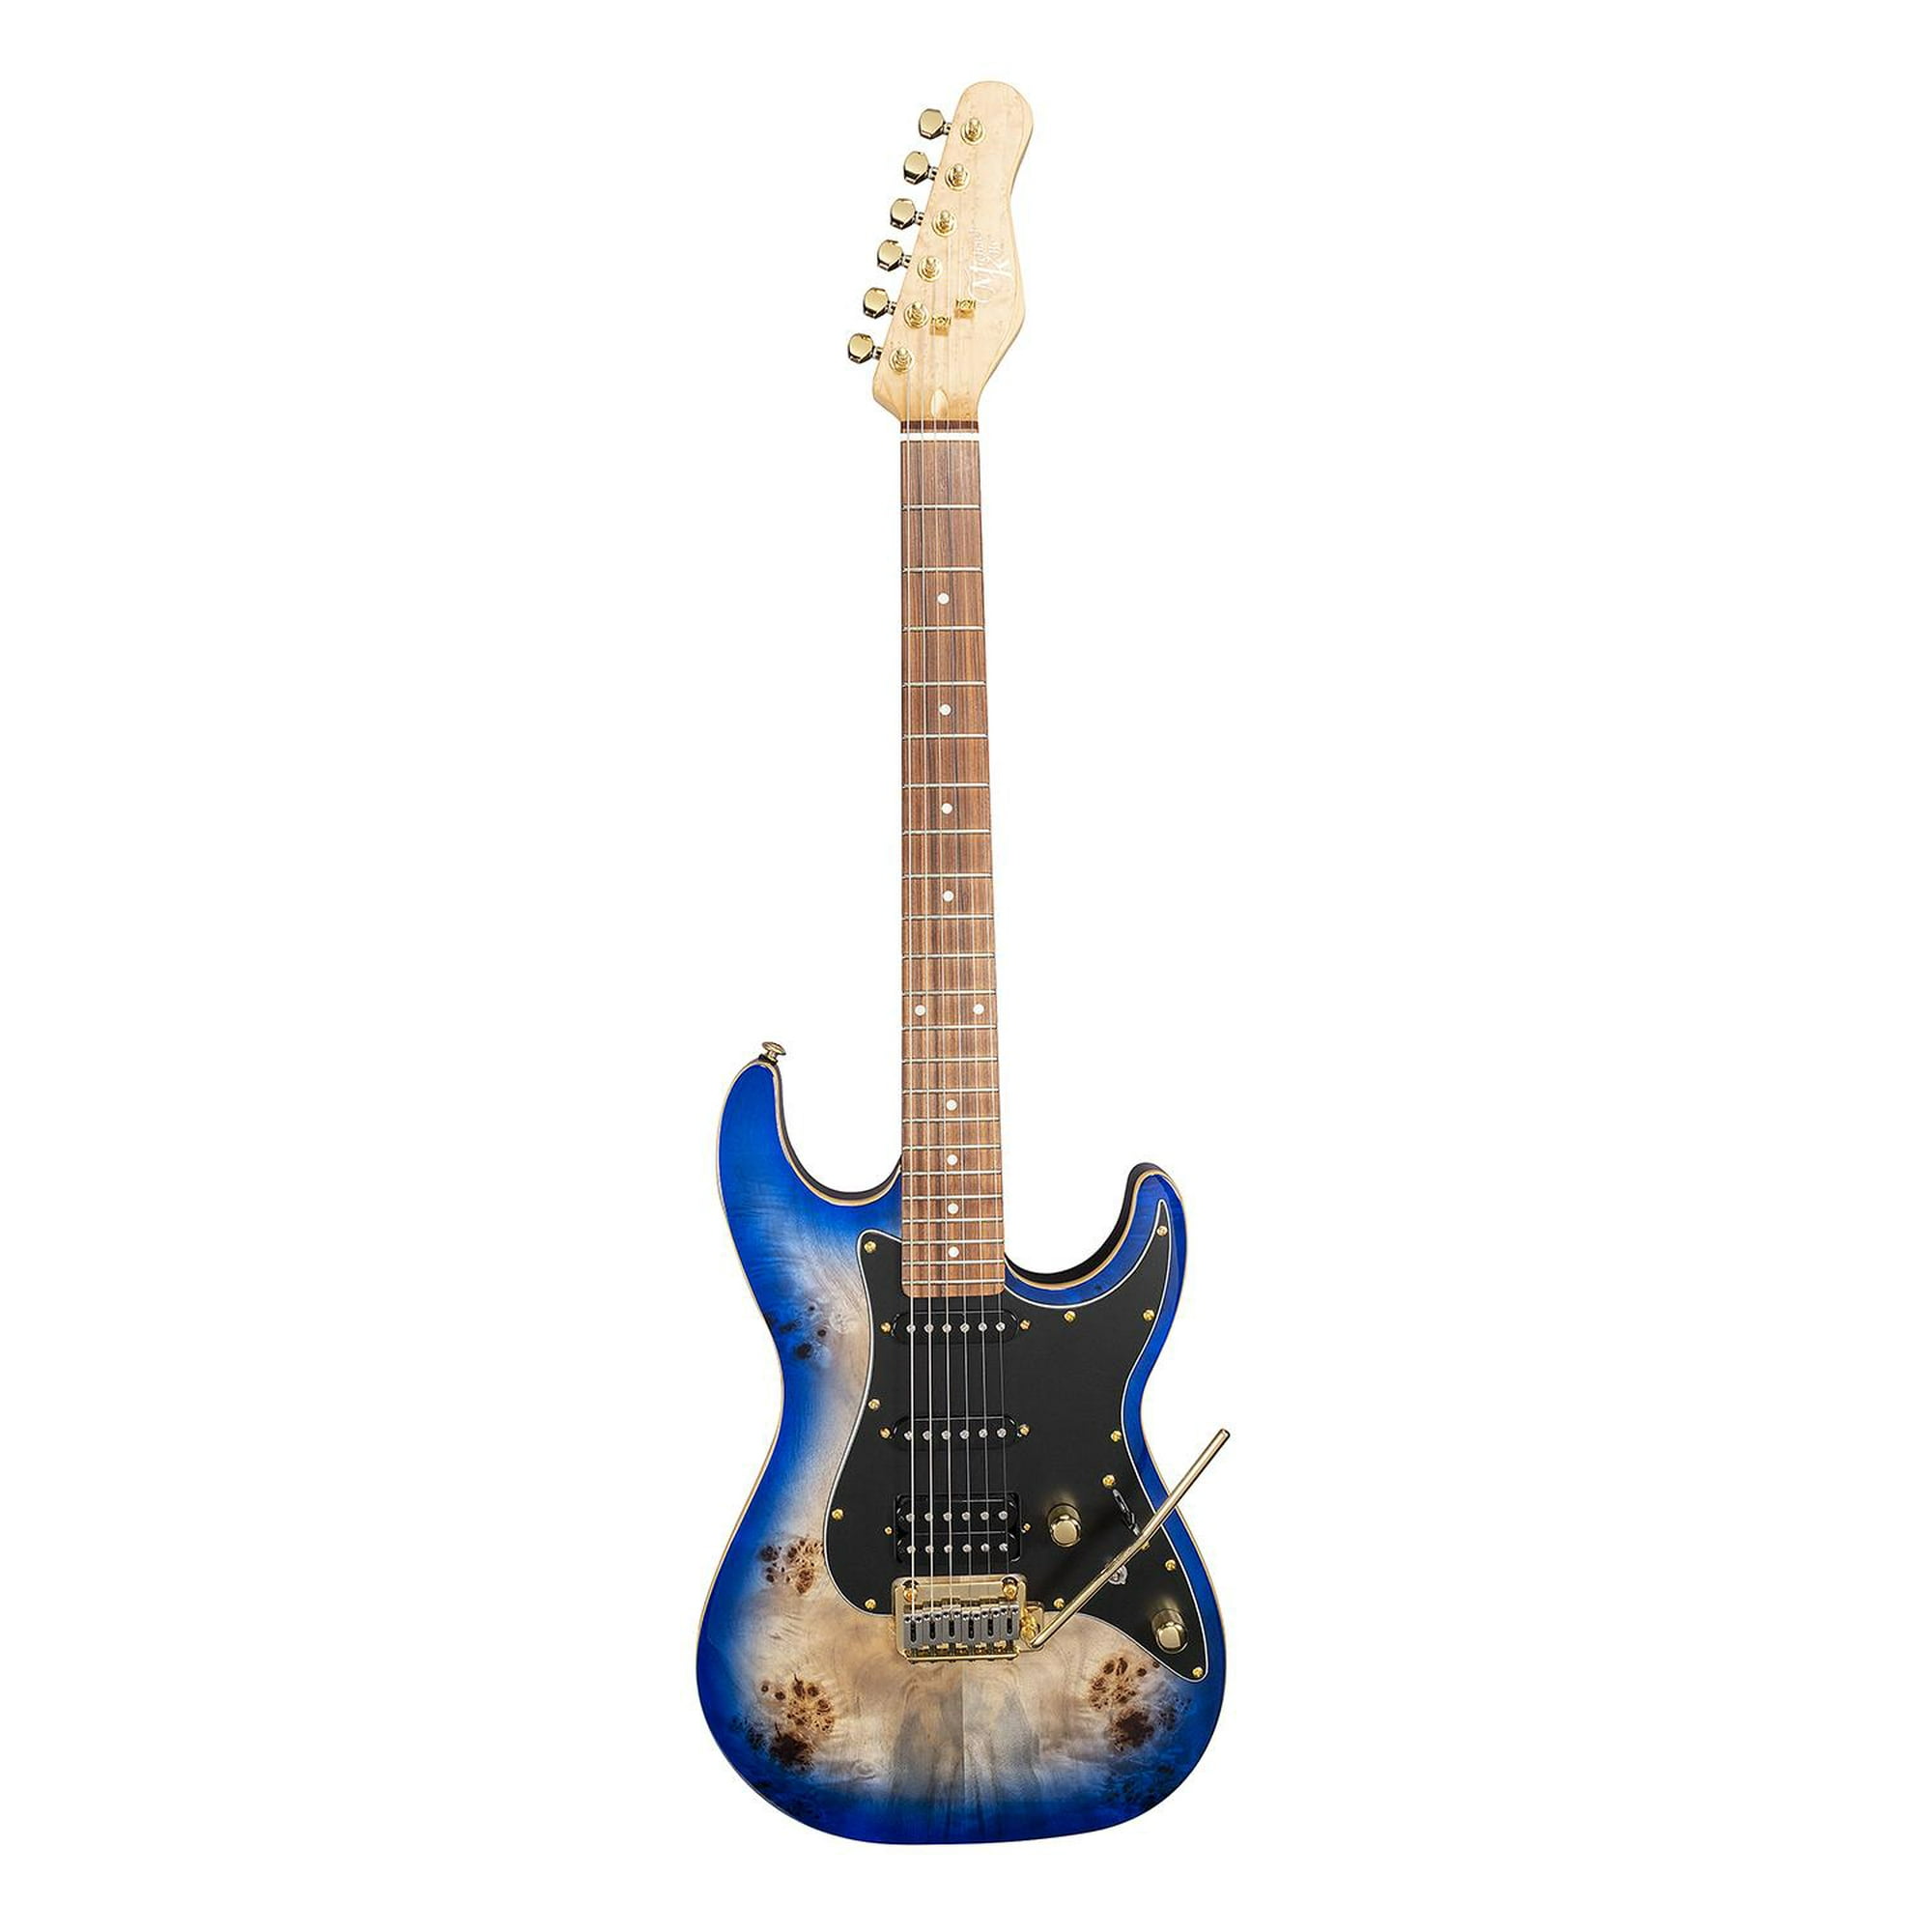 Amplificador Guitarra Electrica Electrovox 90 watts